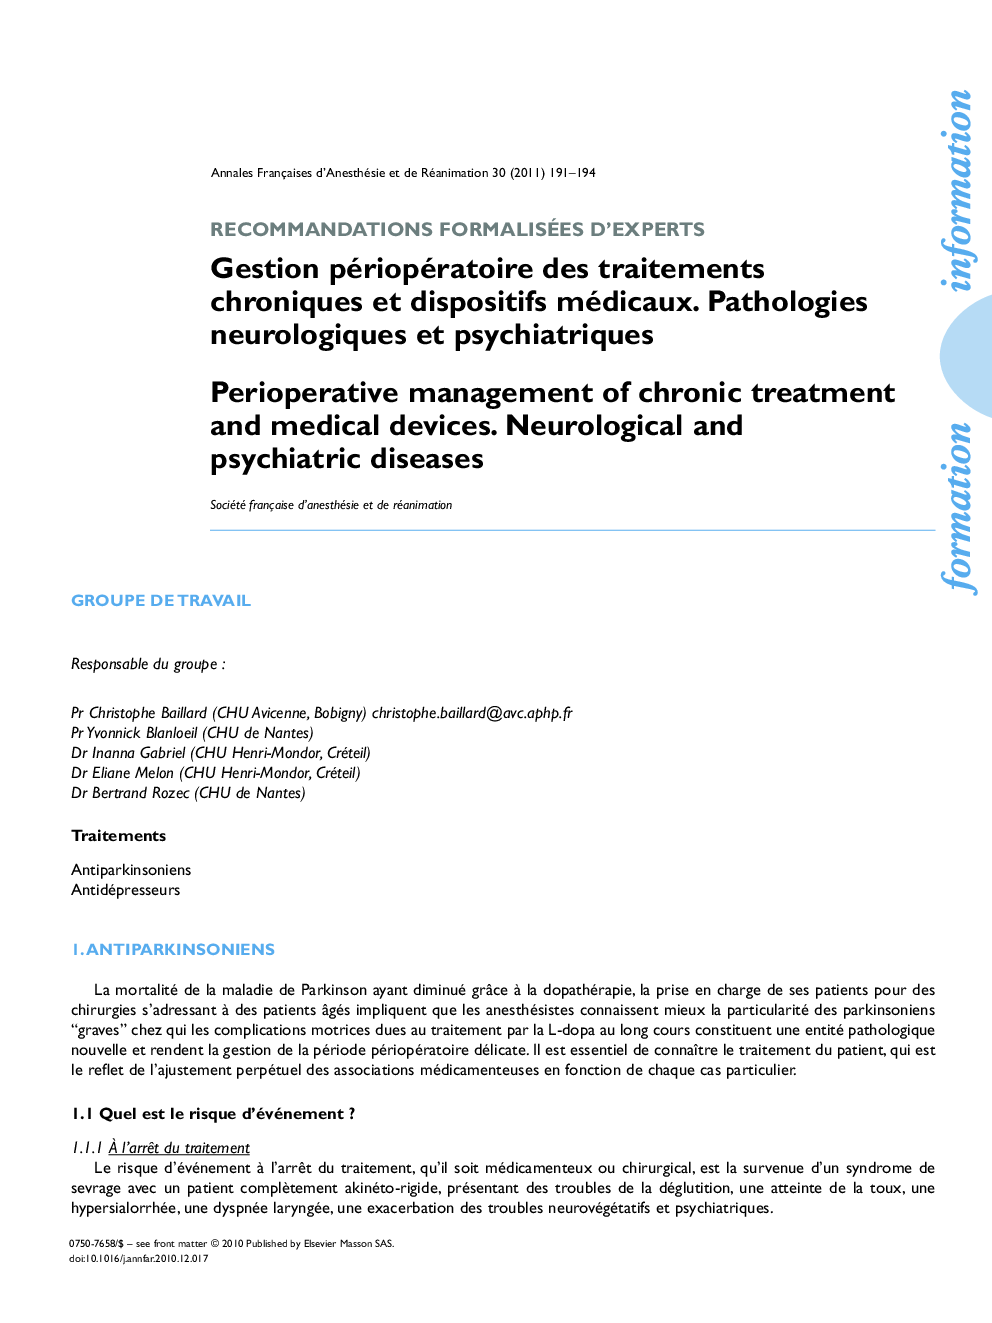 Gestion périopératoire des traitements chroniques et dispositifs médicaux. Pathologies neurologiques et psychiatriques